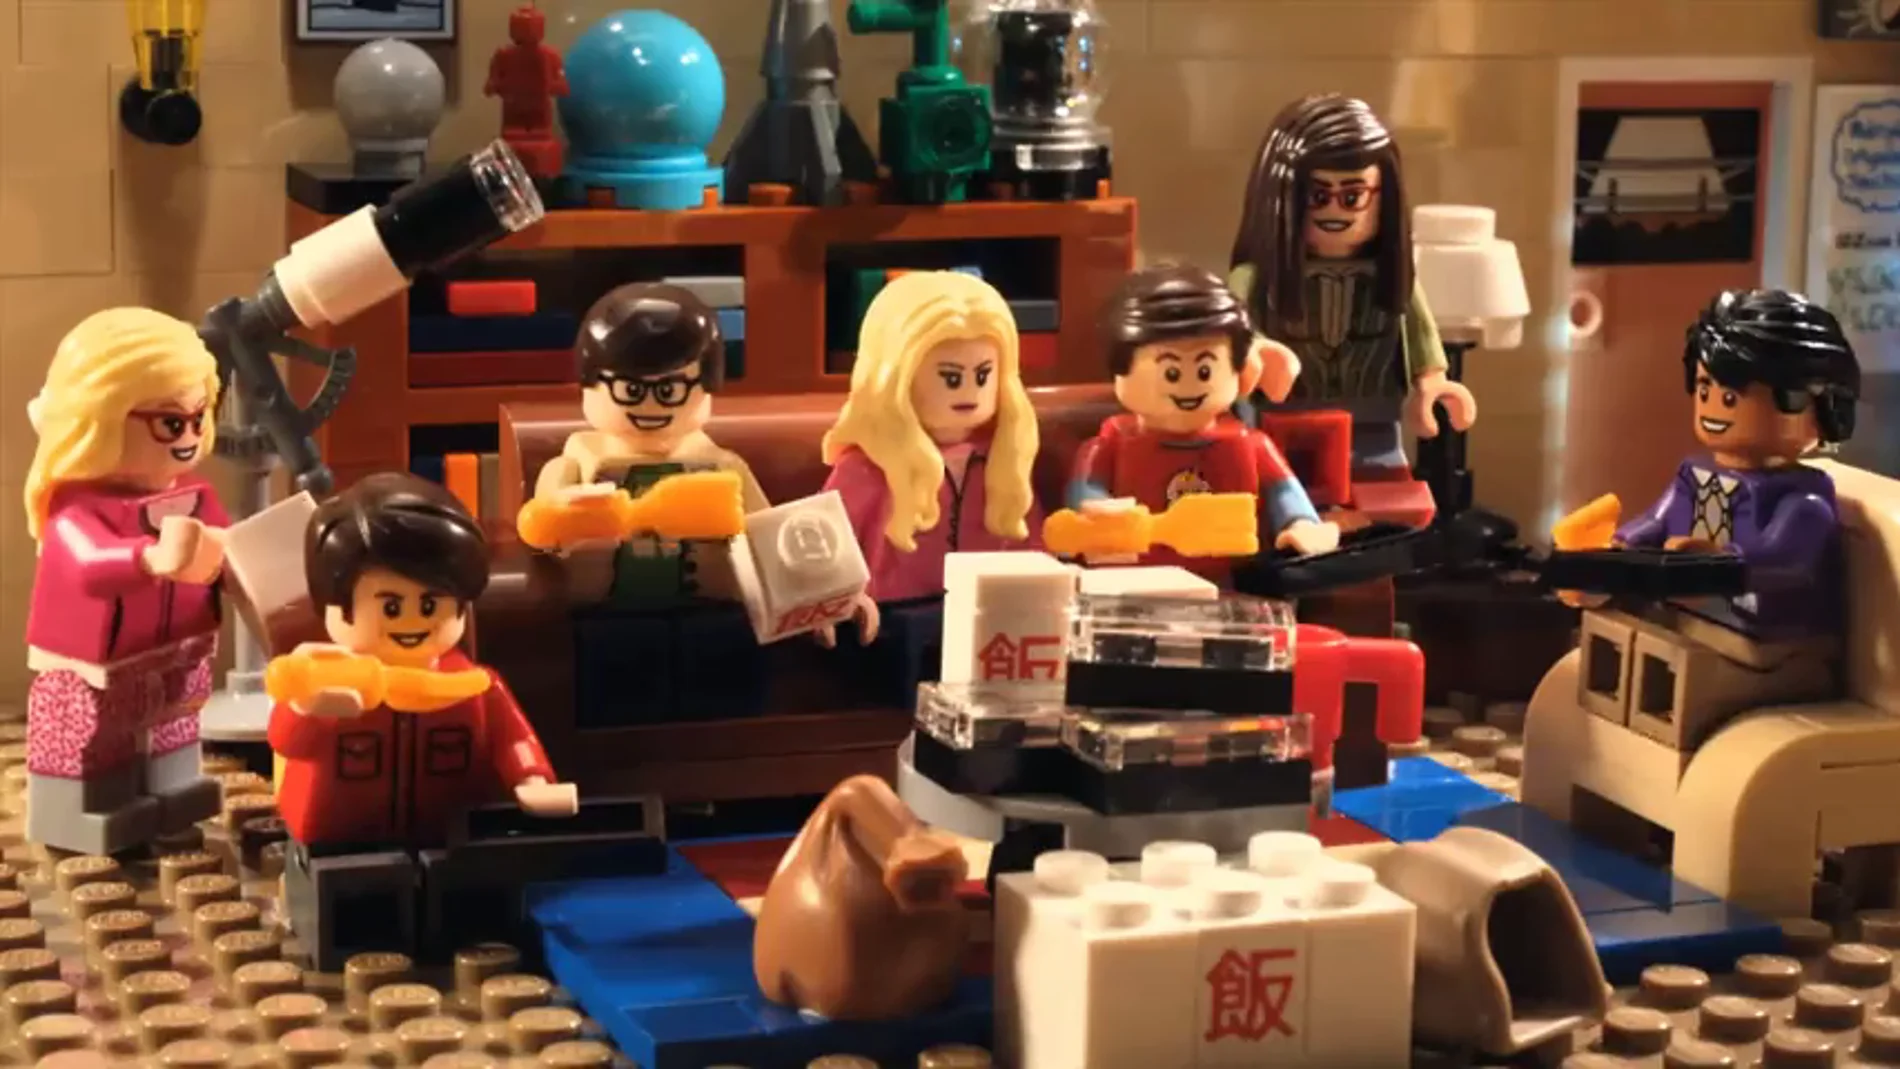 Frame 18.041806 de: Los personajes de The Big Bang Theory se convierten en muñecos de Lego